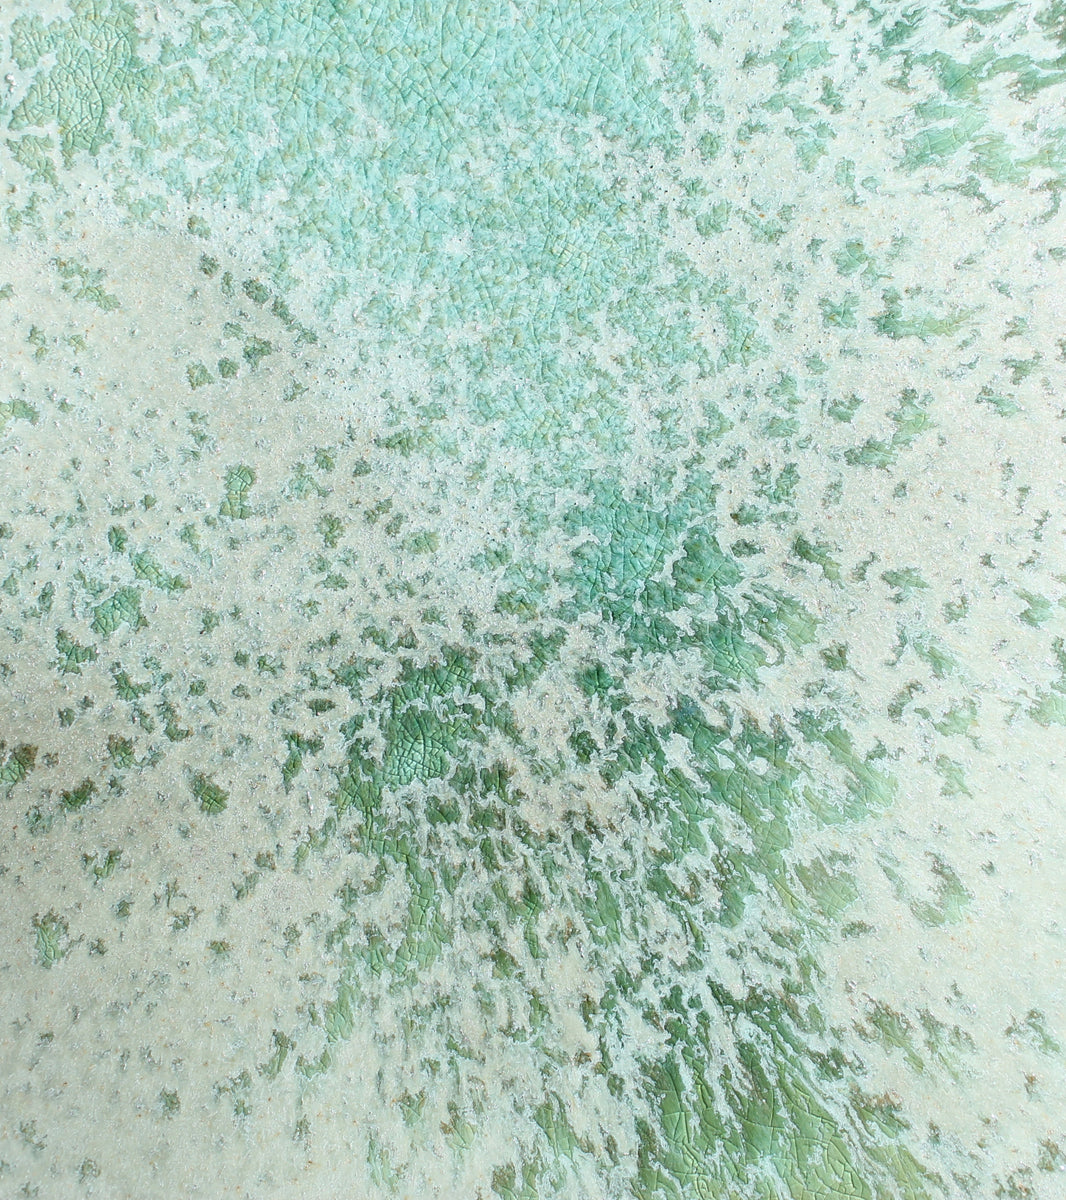 Humongous Platter Bowl / Green Glaze